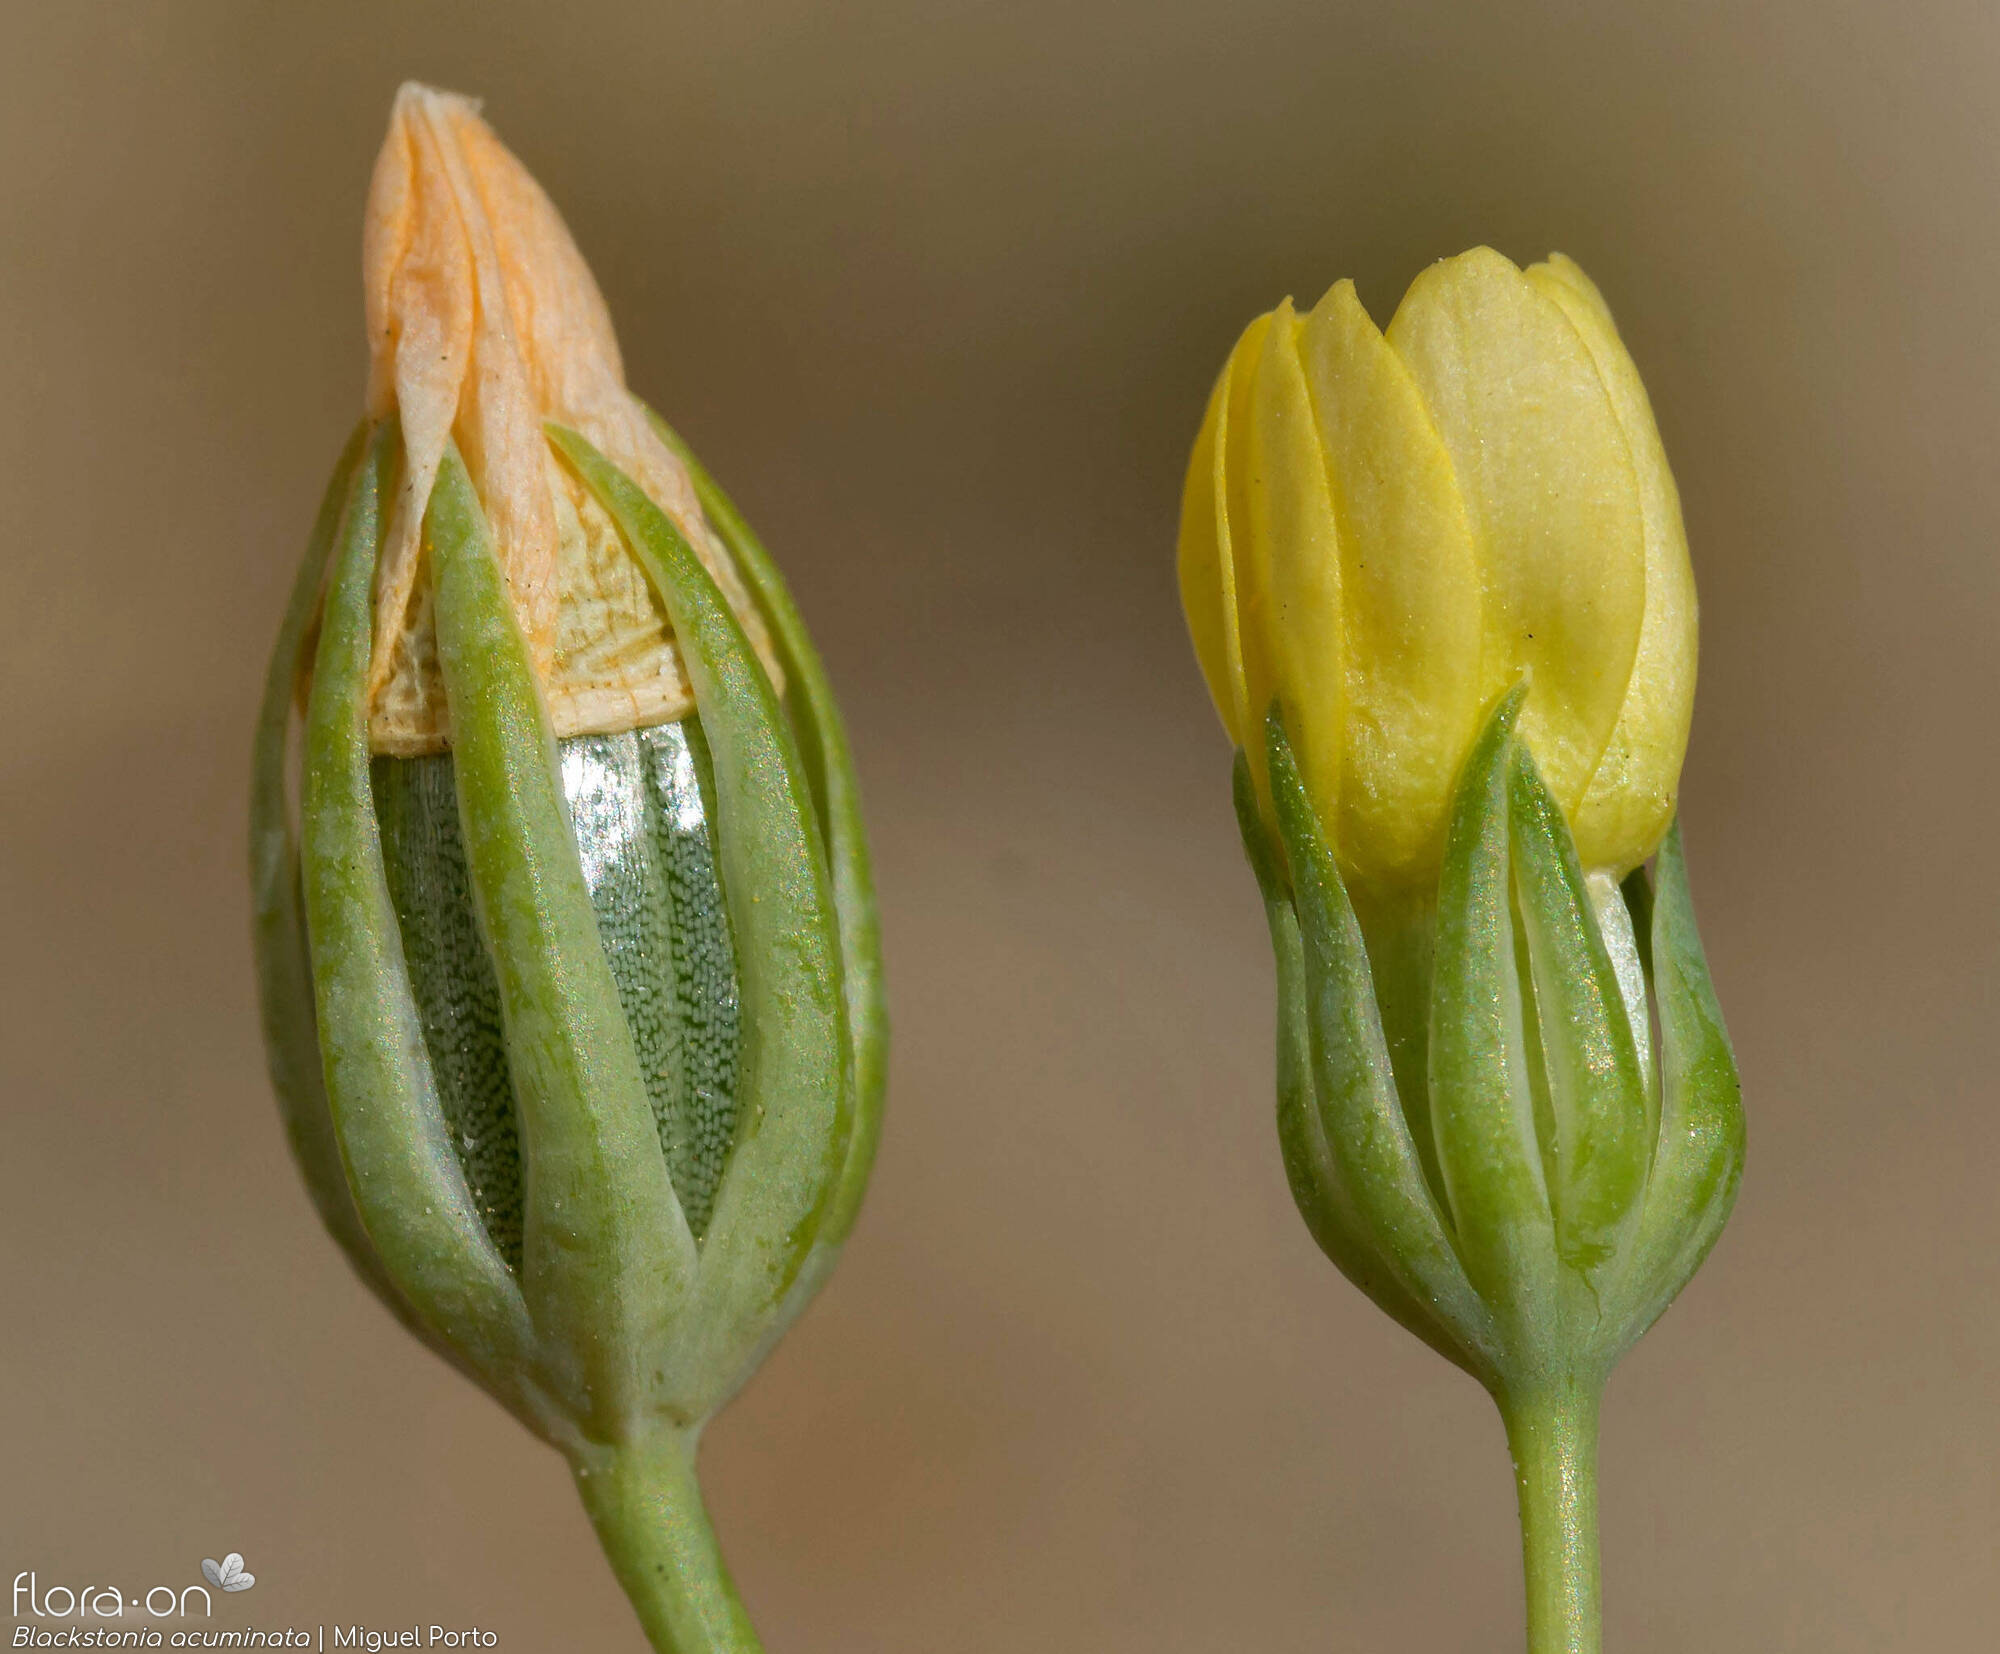 Blackstonia acuminata - Flor (close-up) | Miguel Porto; CC BY-NC 4.0